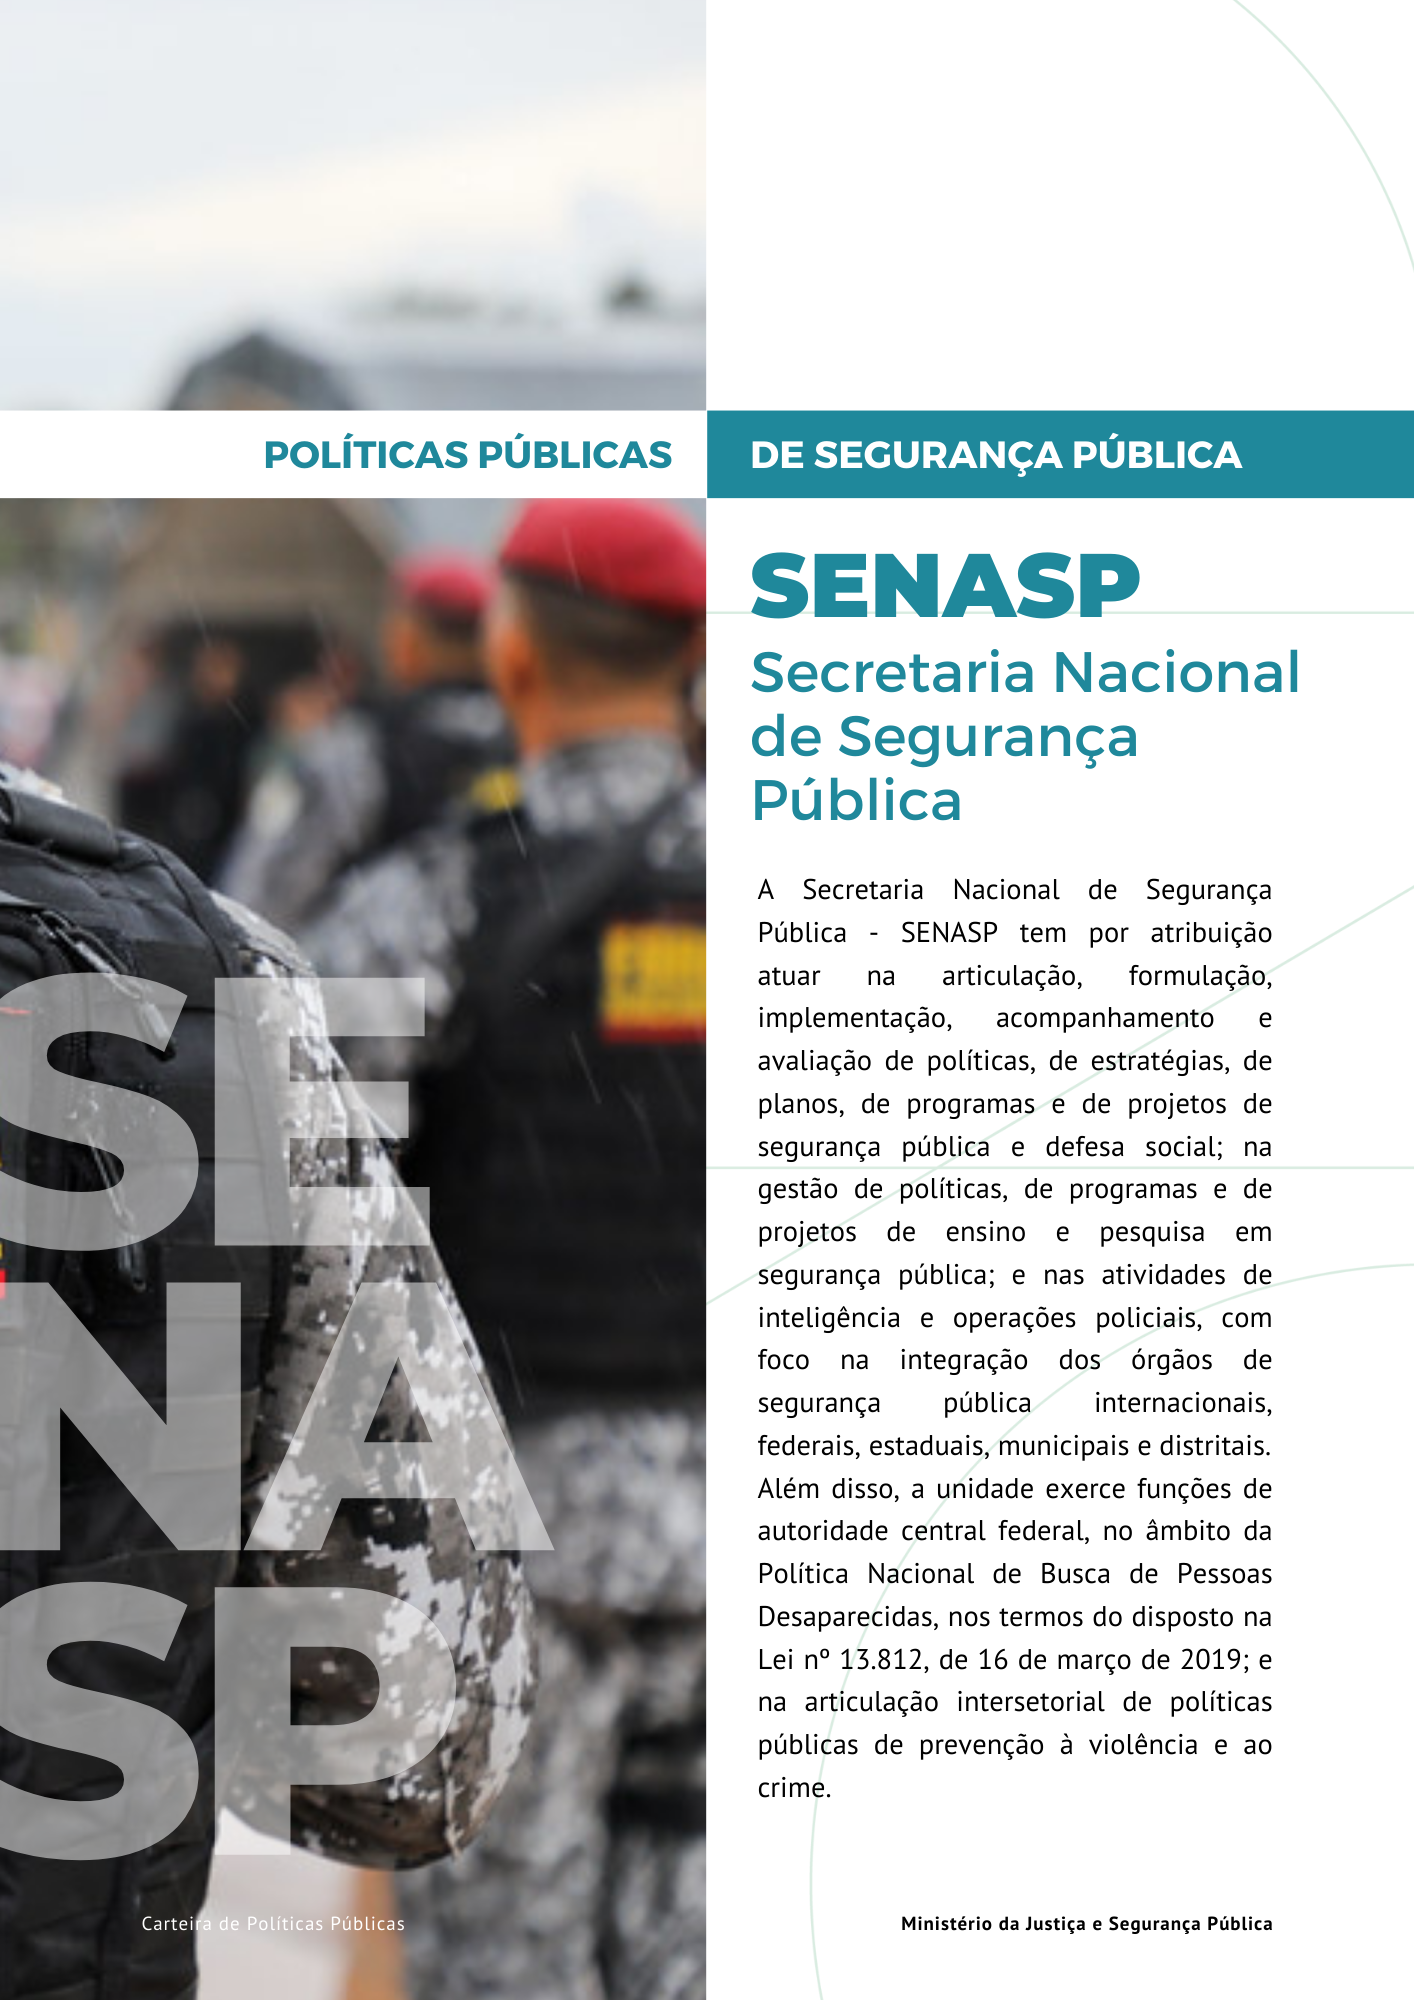 Link para acesso as políticas públicas da Secretaria Nacional de Segurança Pública - SENASP